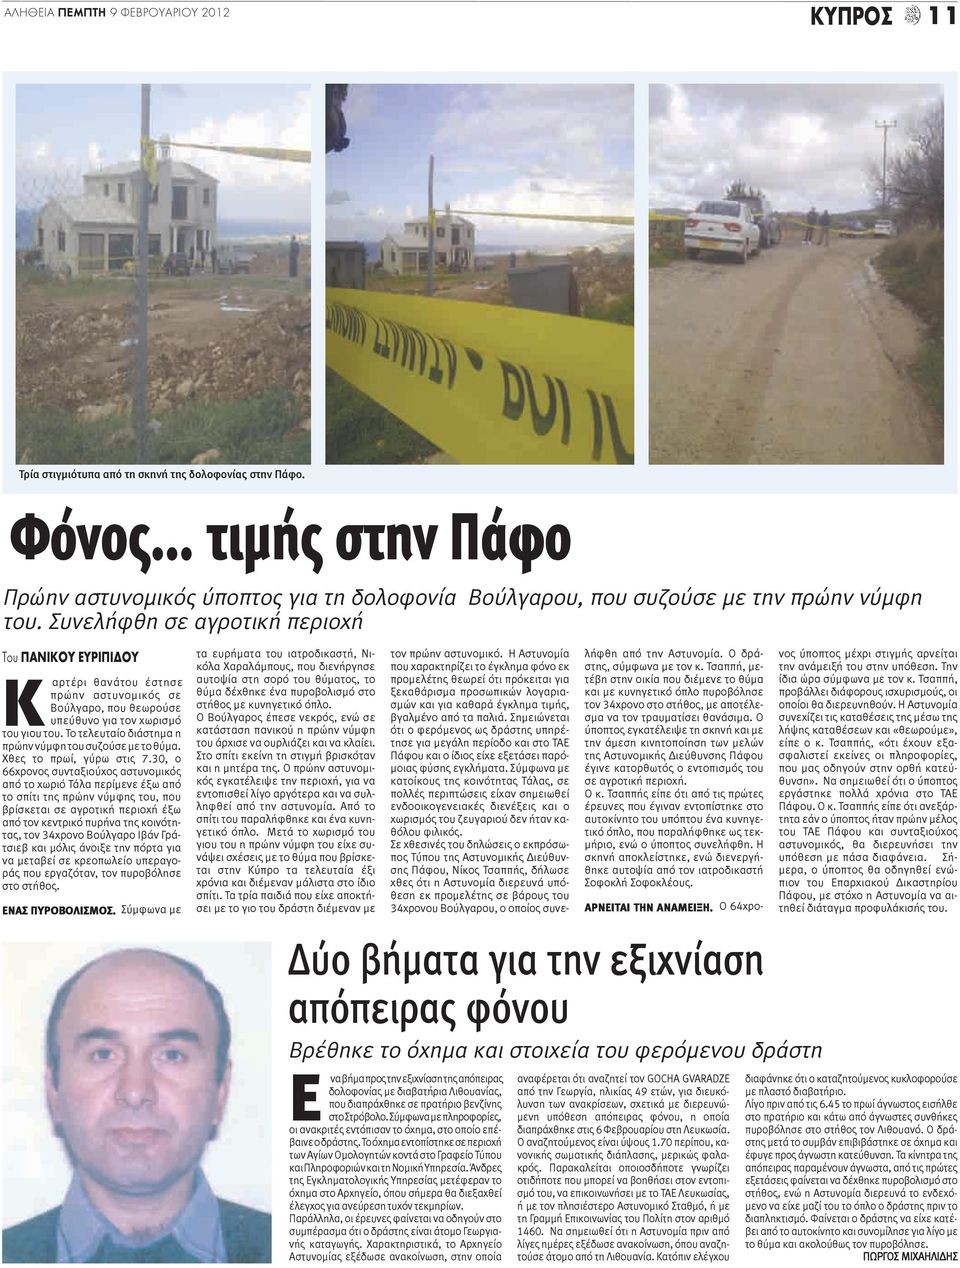 Συνελήφθη σε αγροτική περιοχή Του ΠΑΝΙΚΟΥ ΕΥΡΙΠΙΔΟΥ Κ αρτέρι θανάτου έστησε πρώην αστυνομικός σε Βούλγαρο, που θεωρούσε υπεύθυνο για τον χωρισμό του γιου του.